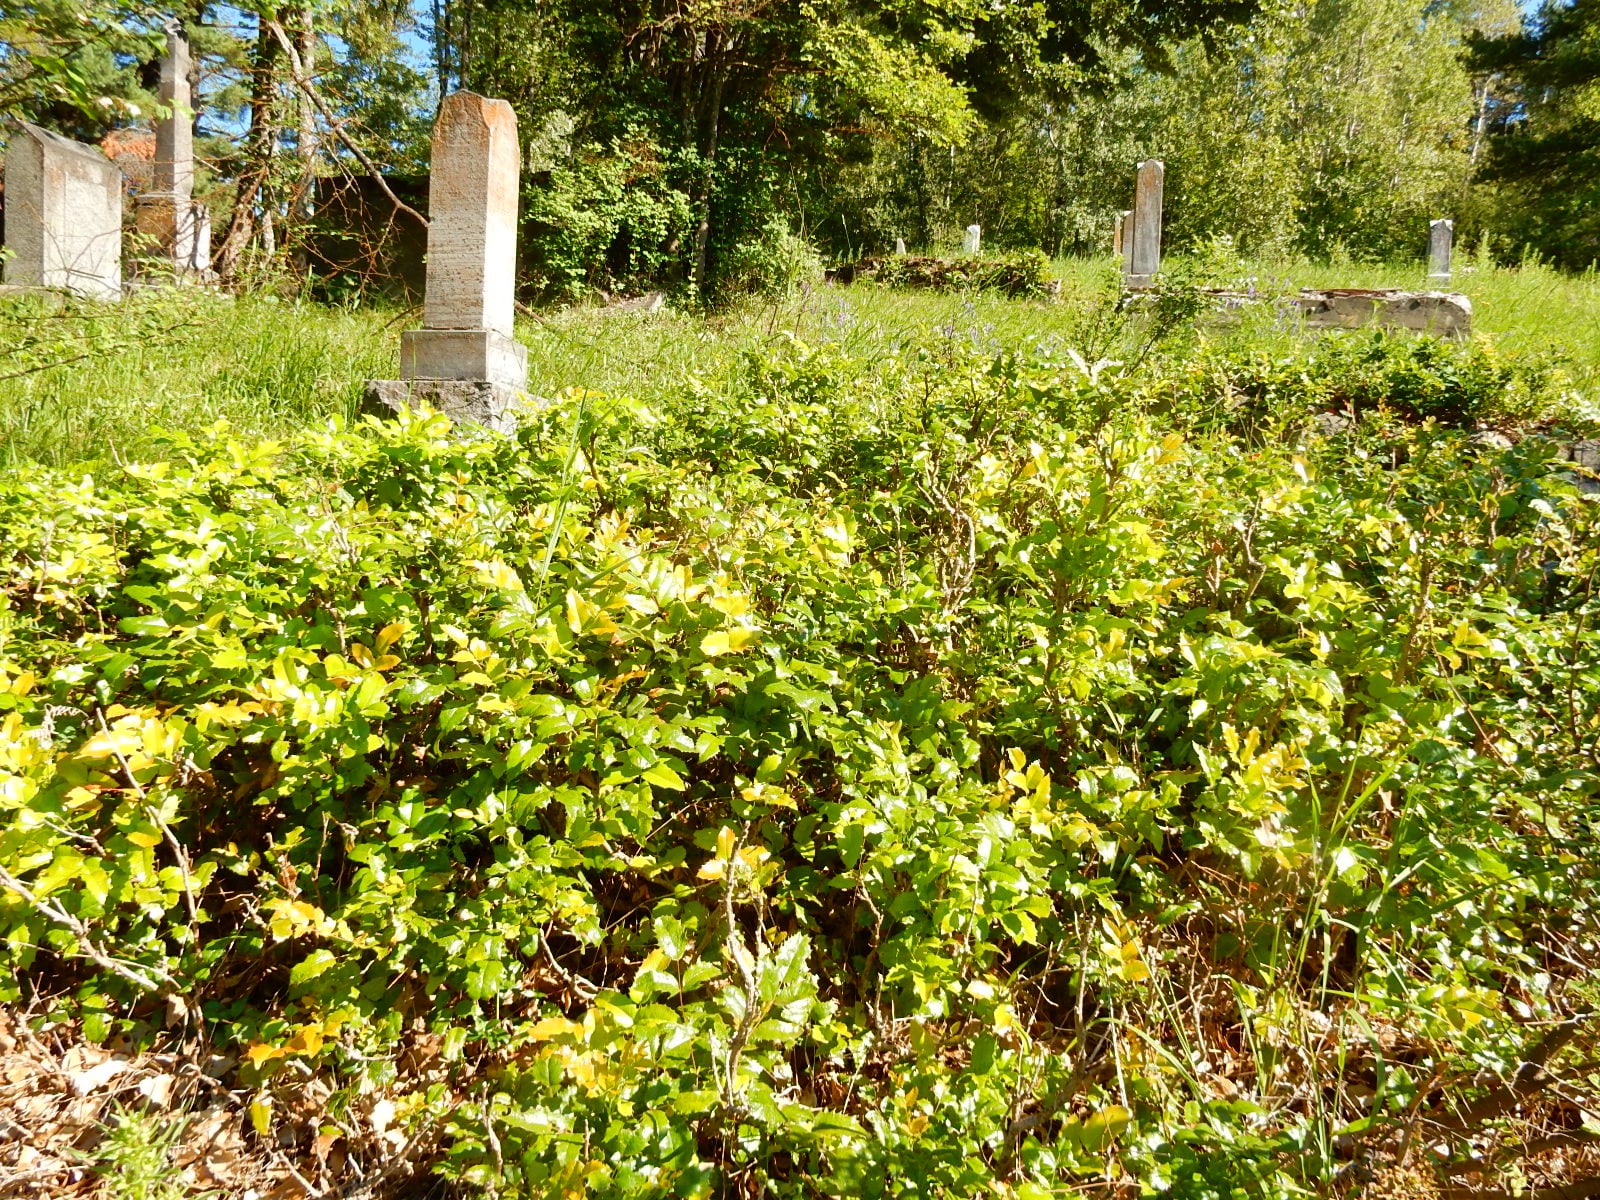 Native Plants vs. Herbicides: Oregon Grape Quandary in the Columbia Cemetery